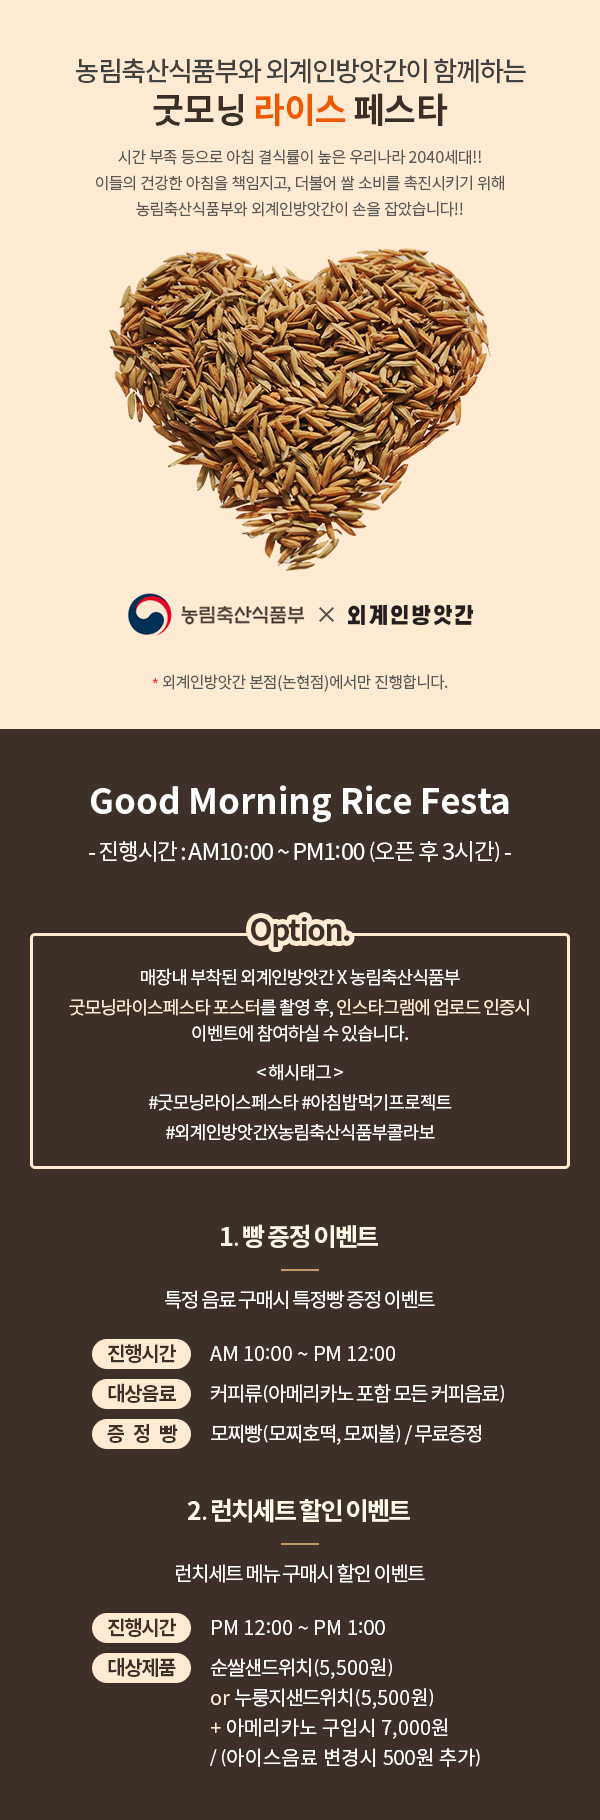 ǰο ܰιѰ Բϴ ¸ ̽ 佺Ÿ ð  ħ ķ  츮2040!! ̵ ǰ ħ å, Ҿ  Һ Ű ǰο ܰιѰ  ҽϴ!! ǰ X ܰιѰ ܰιѰ () մϴ. good Morning Rice Fest ð : AM10:00~PM1:00(  3ð) 峻  ܰιѰXǰ ¸׶̽佺Ÿ ͸ Կ , νŸ׷ ε  ̺Ʈ Ͻ  ֽϴ. ؽ± #¸ ̽佺Ÿ #ħԱ Ʈ #ܰιѰXǰݶ 1.̺Ʈ Ư  Ž Ư ̺Ʈ ð AM10:00~PM12:00  ĿǷ(Ƹ޸ī   Ŀ)  (ȣ, )/ 2.ġƮ  ̺Ʈ ġƮ ޴ Ž  ̺Ʈ ð PM12:00~PM1:00 ǰ  һġ(5,500) or ġ(5,500) + Ƹ޸ī Խ 7,000 / ̽ũ ắ 500߰